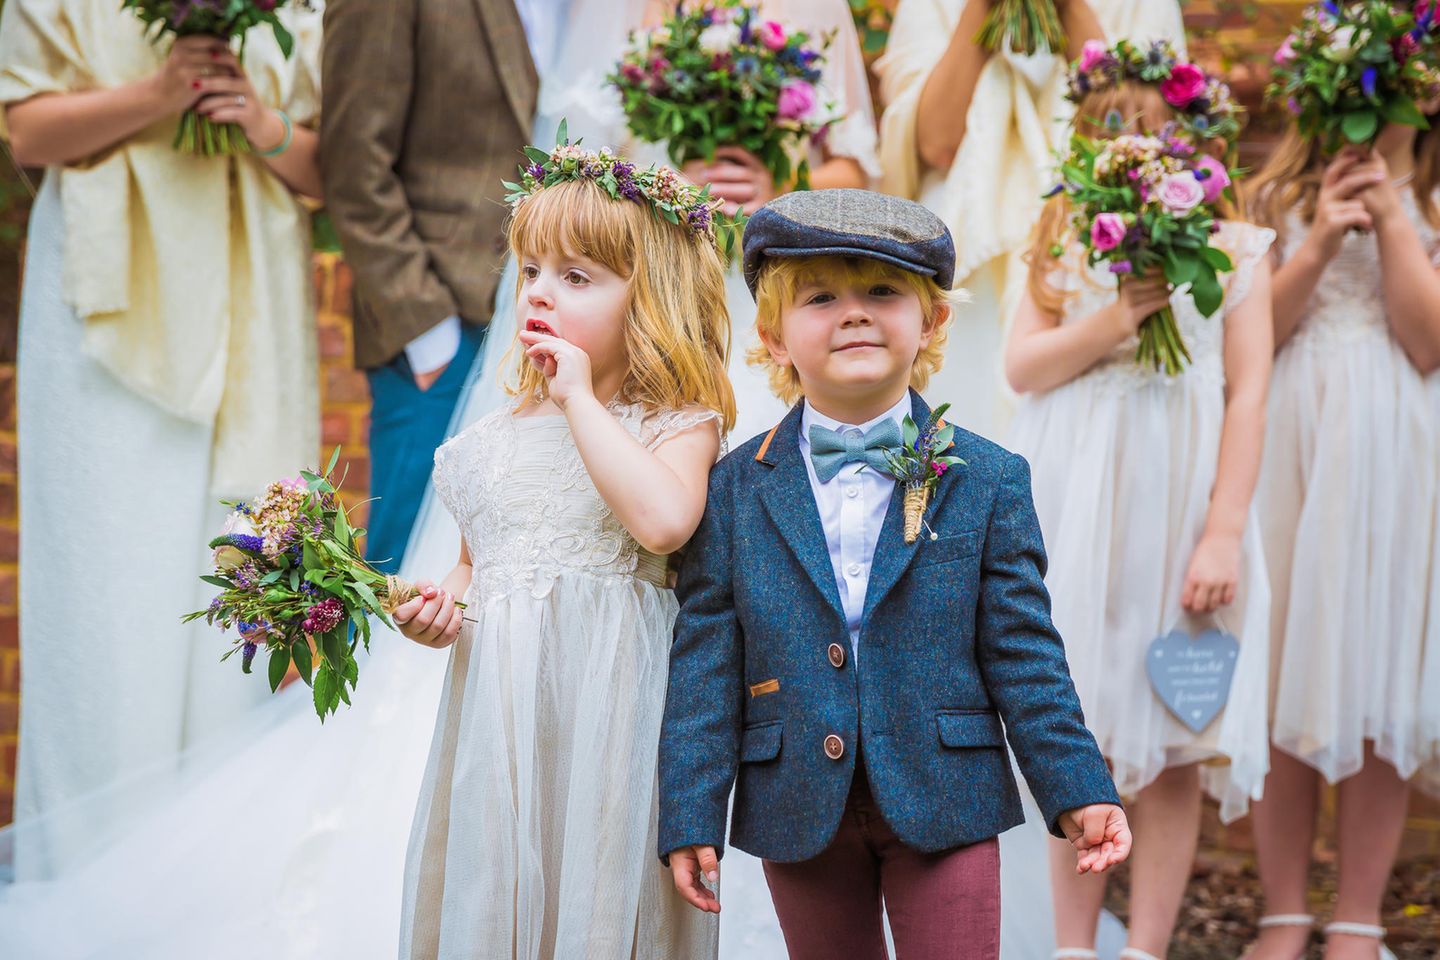 Festliche Kindermode: Mädchen und Junge, festlich gekleidet, auf einer Hochzeit mit Blumenmädchen im Hintergrund.